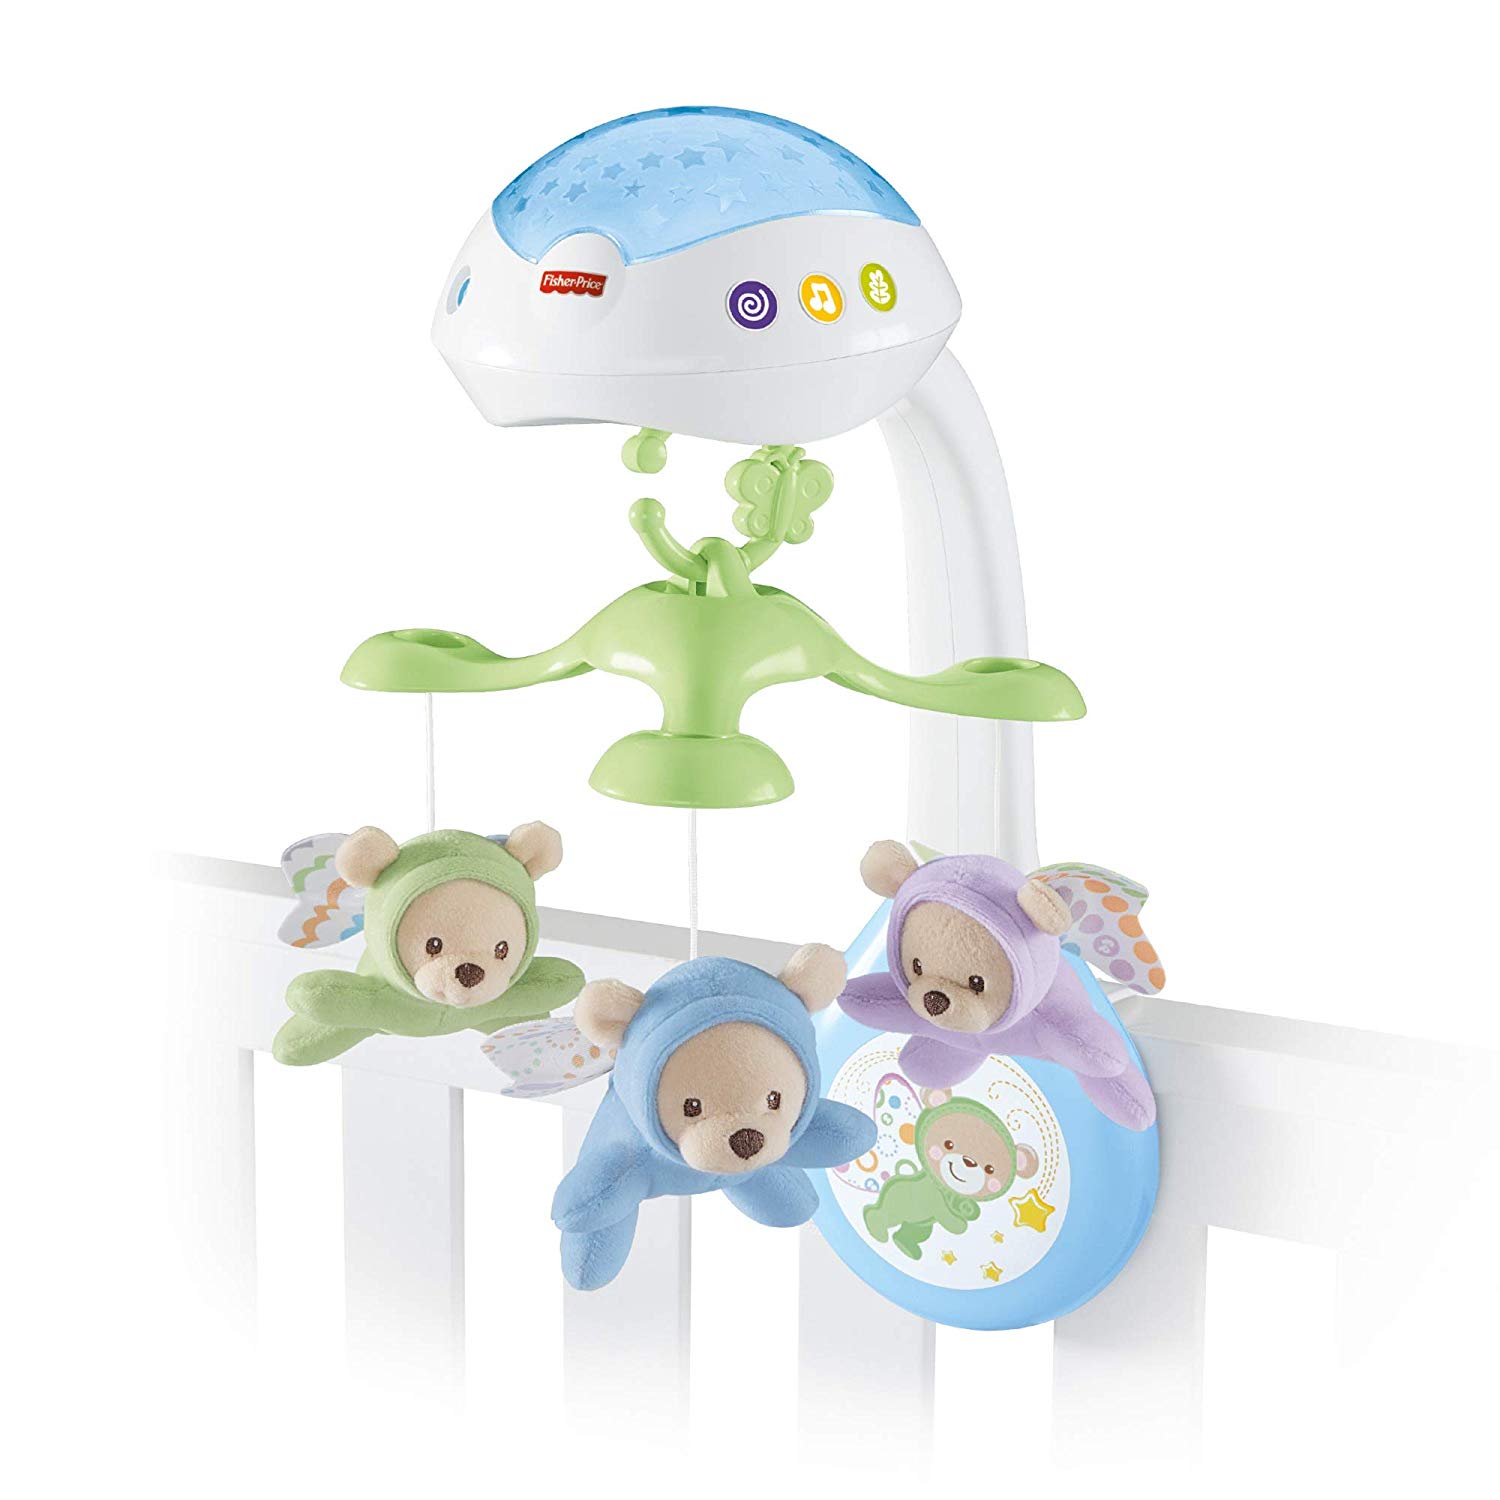 Muzikale wiegmobiel voor baby's tot 5 maanden. 
Sterrenlichtshow op wanden en plafond. 
Drie geluidsmodules met tot wel 30 minuten slaapliedjes, witte ruis of natuurgeluidjes. 